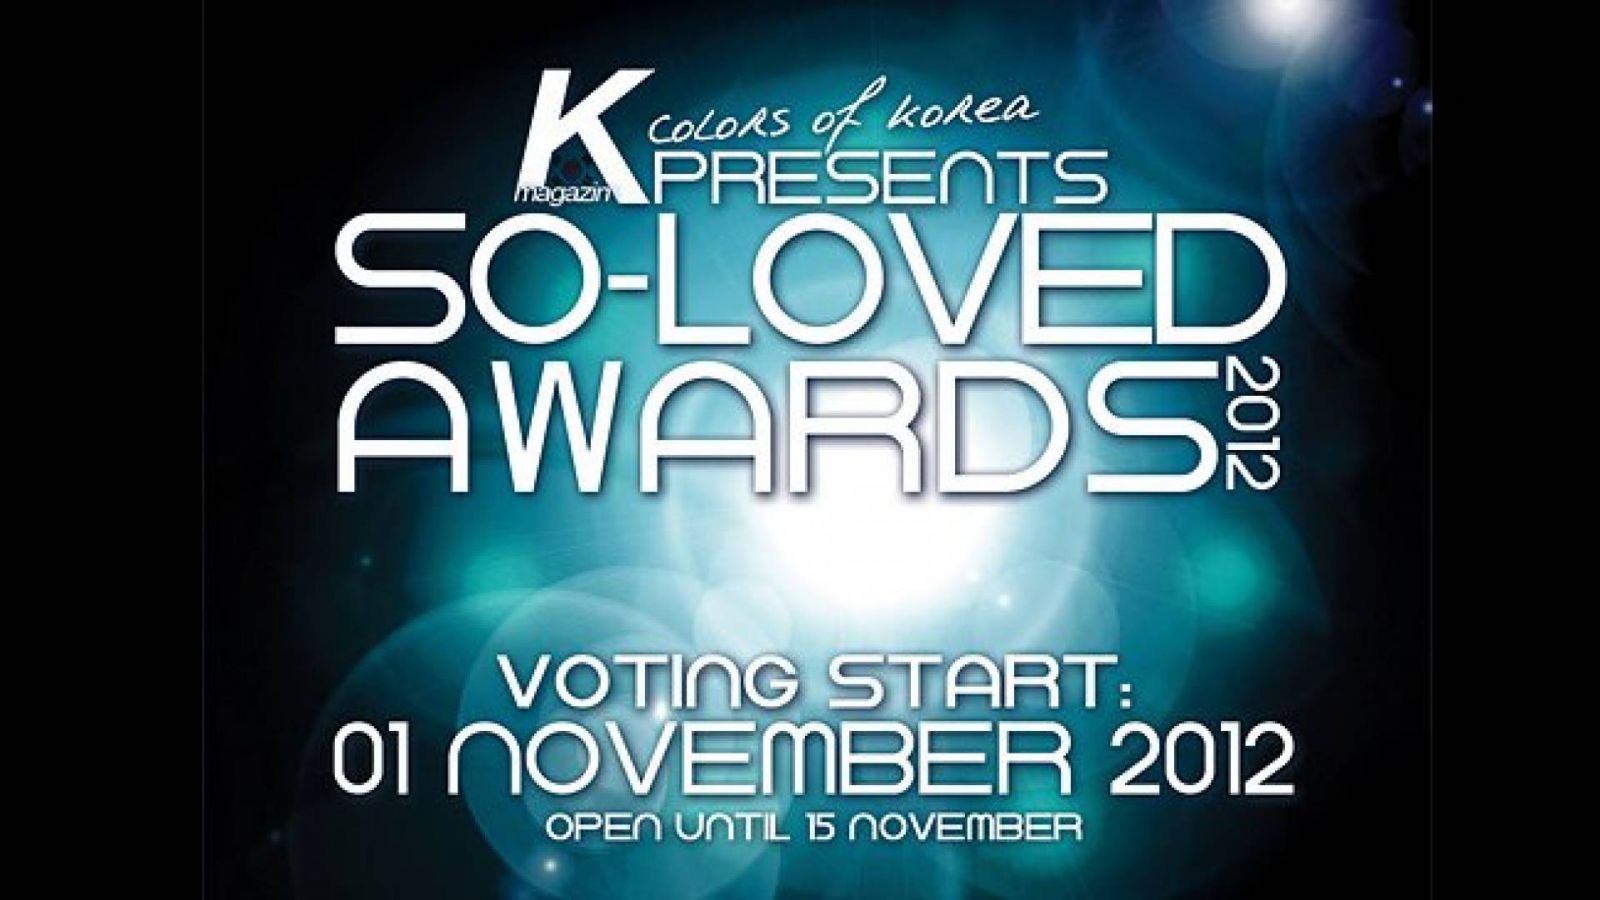 SO-LOVED AWARDS 2012